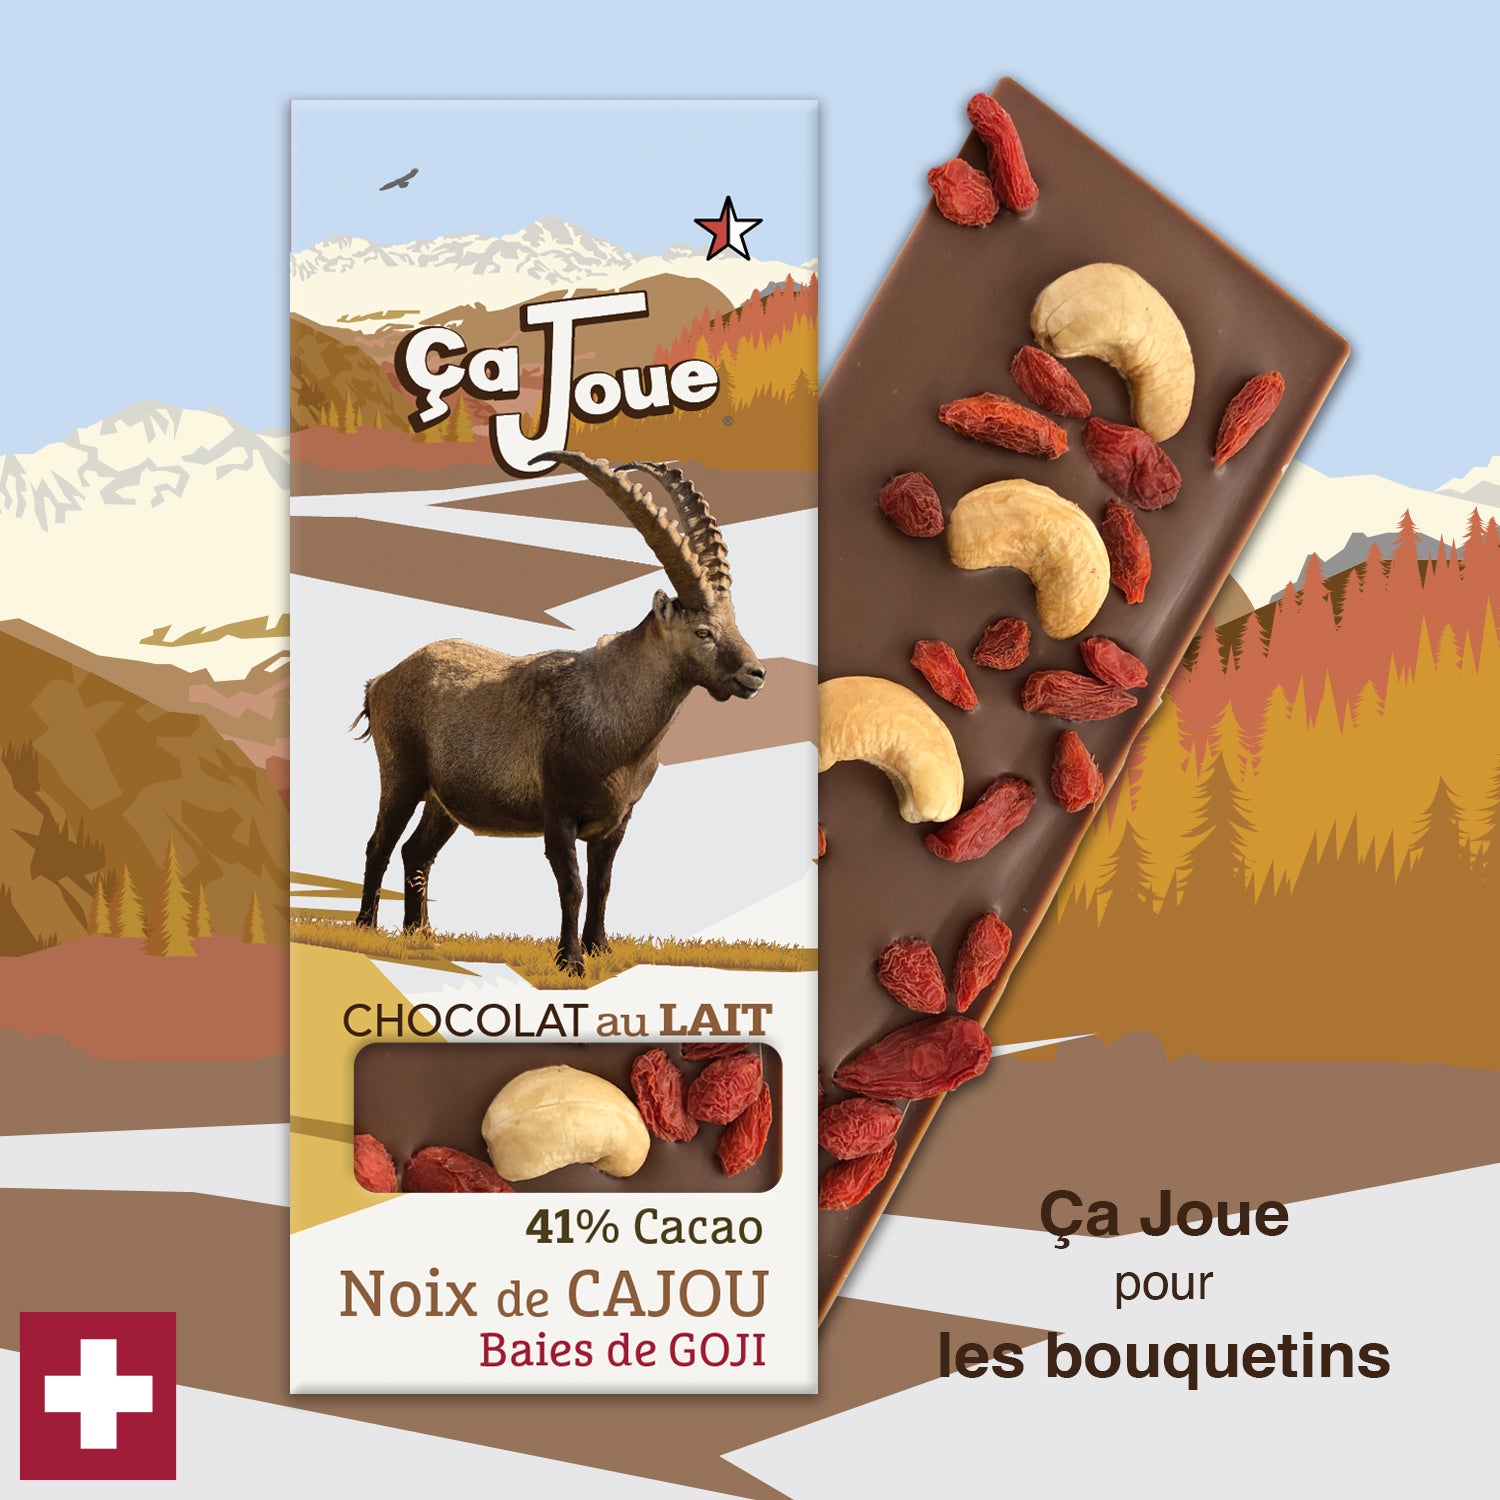 Ça Joue for Ibex (Ref-BL3) Milk Chocolate from Val de Bagnes